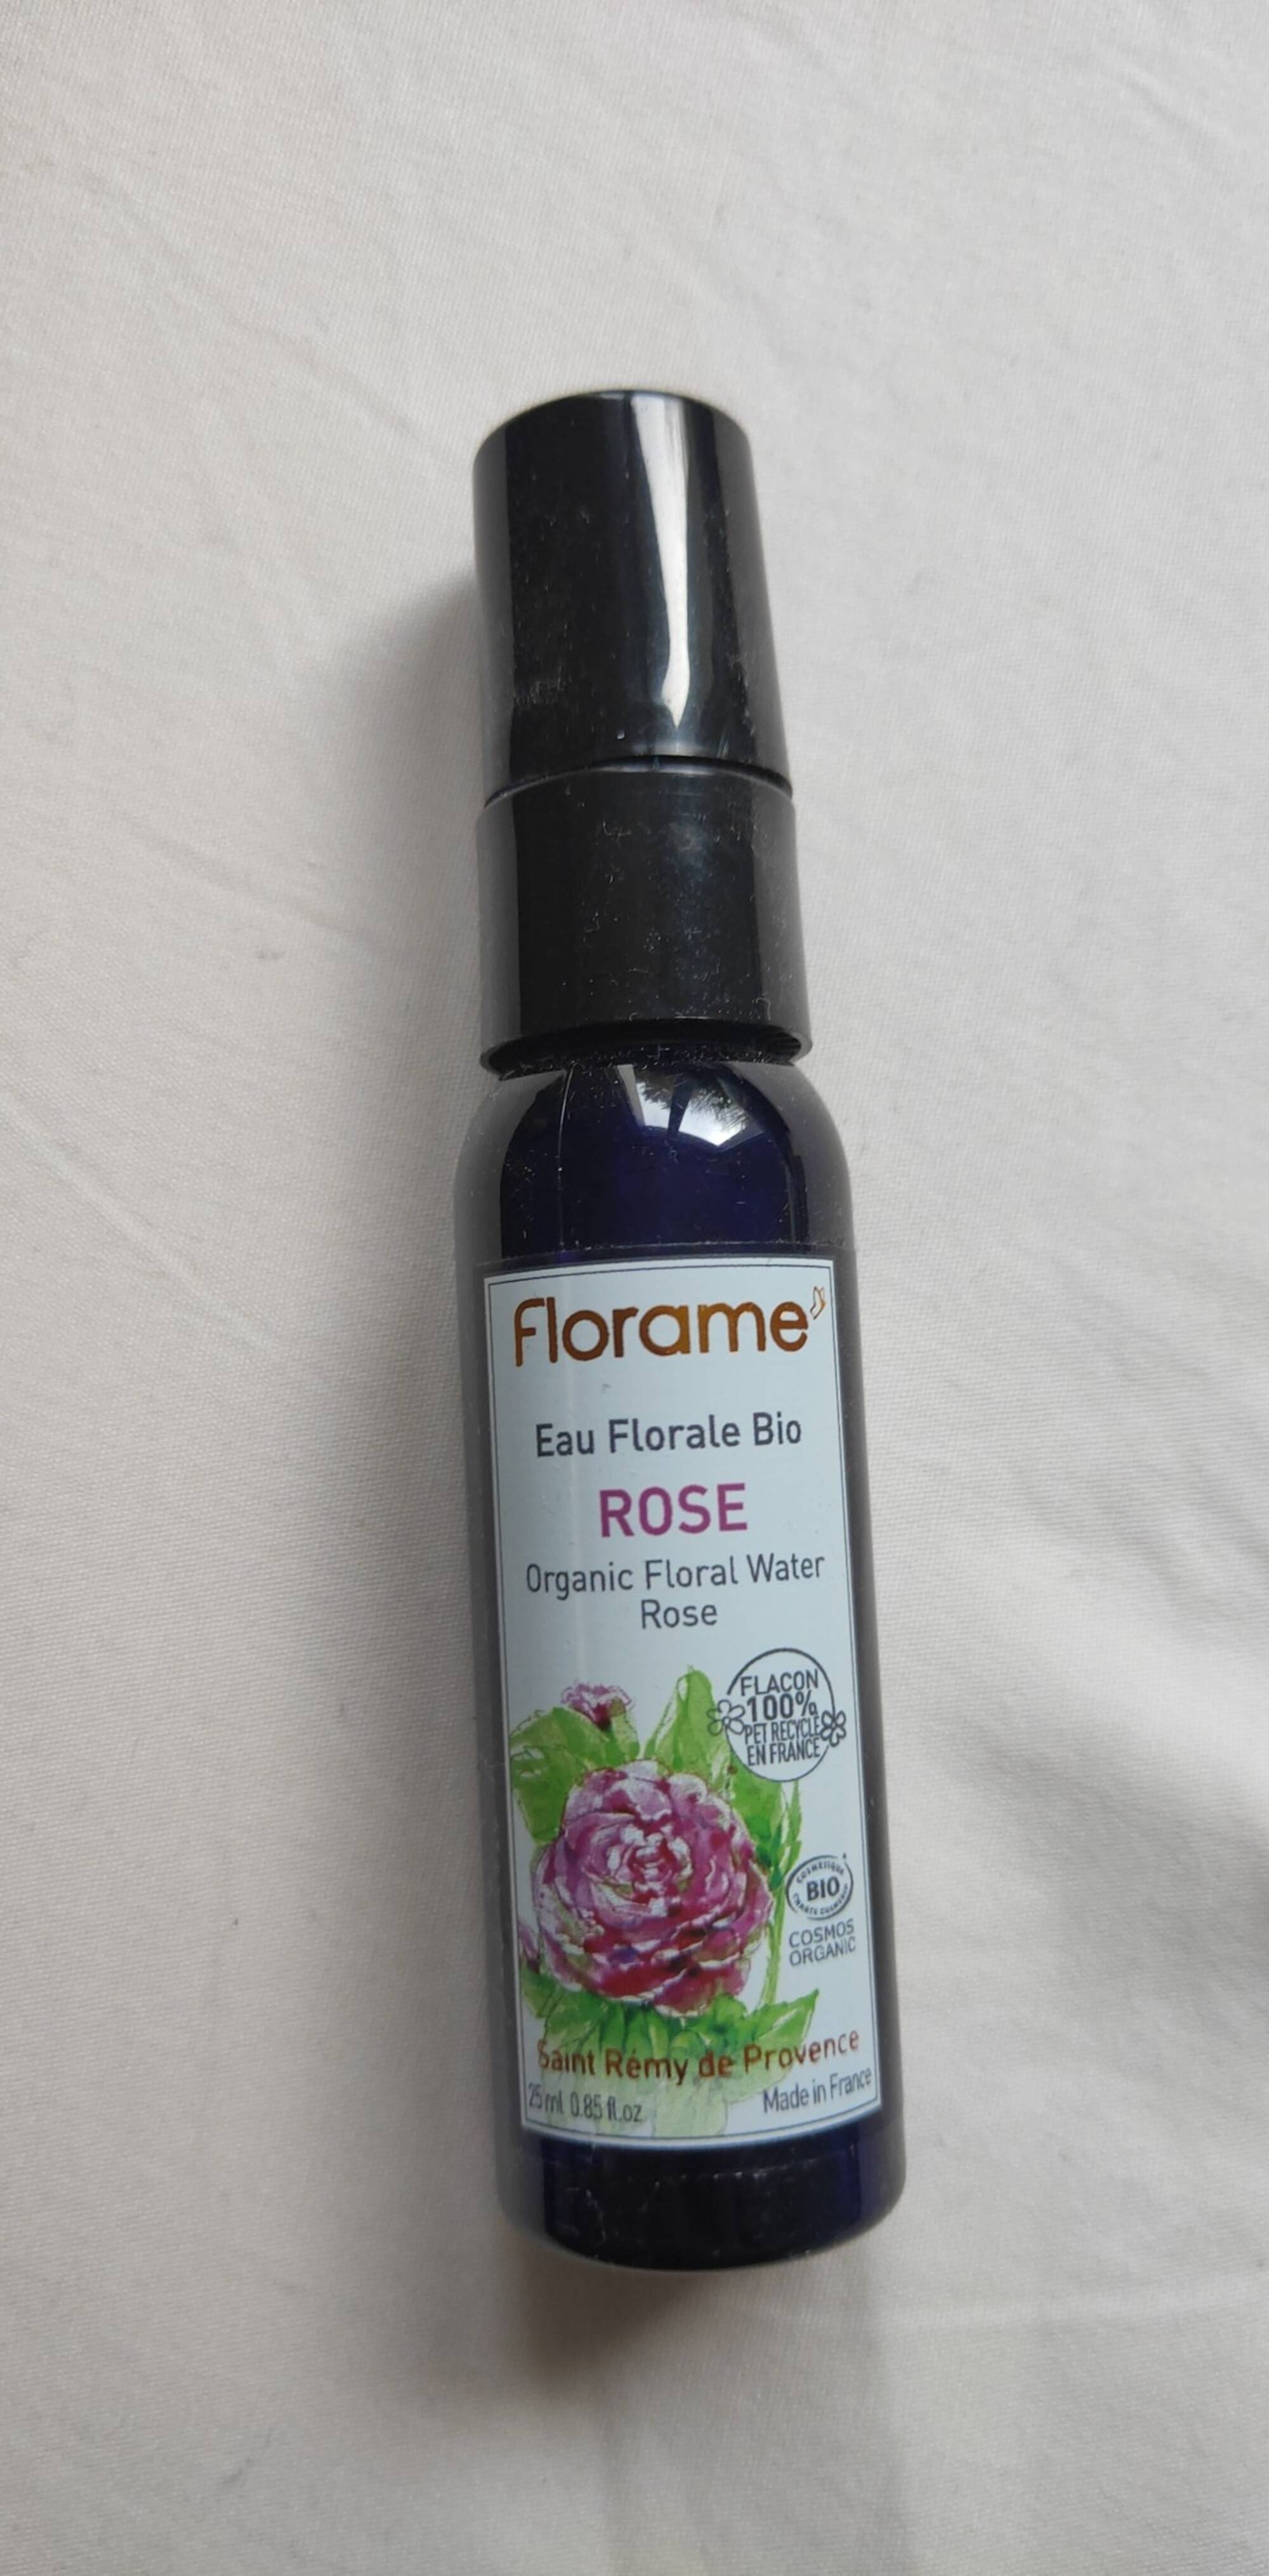 FLORAME - Rose - Eau floral bio